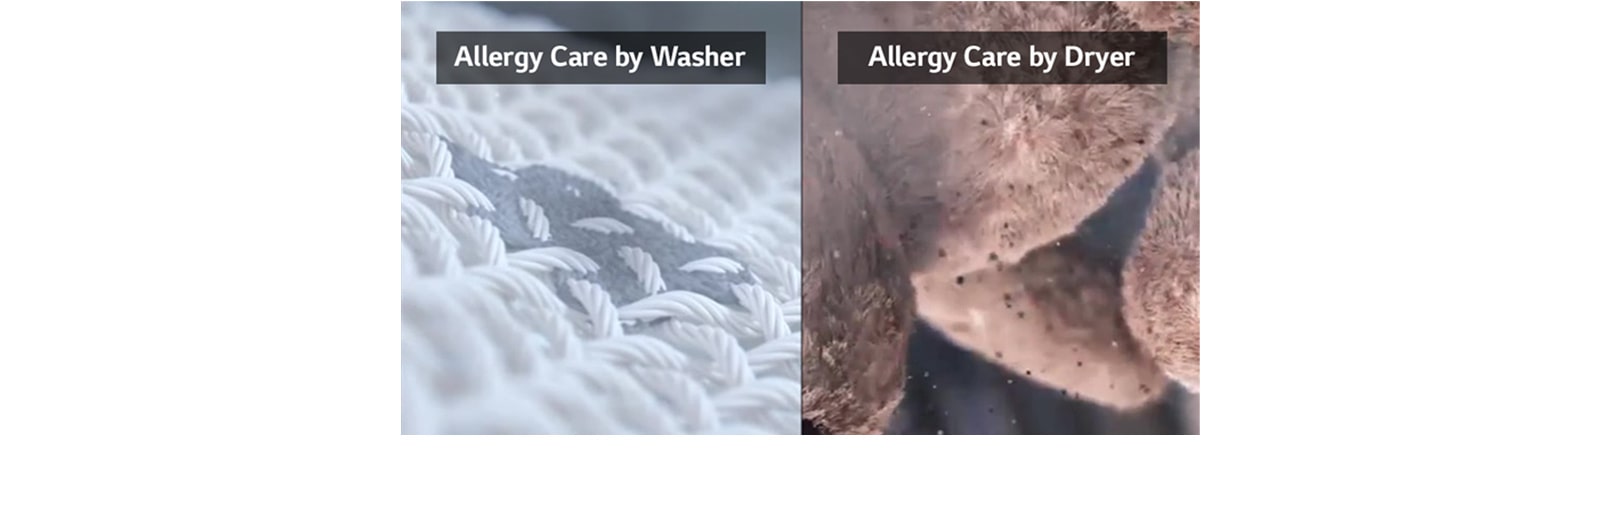 Đây là video cho thấy các chất ô nhiễm được loại bỏ khỏi đồ giặt bên trong máy giặt và một con gấu bông trong máy sấy. Trong quá trình sấy, bụi và những thứ tương tự được loại bỏ.